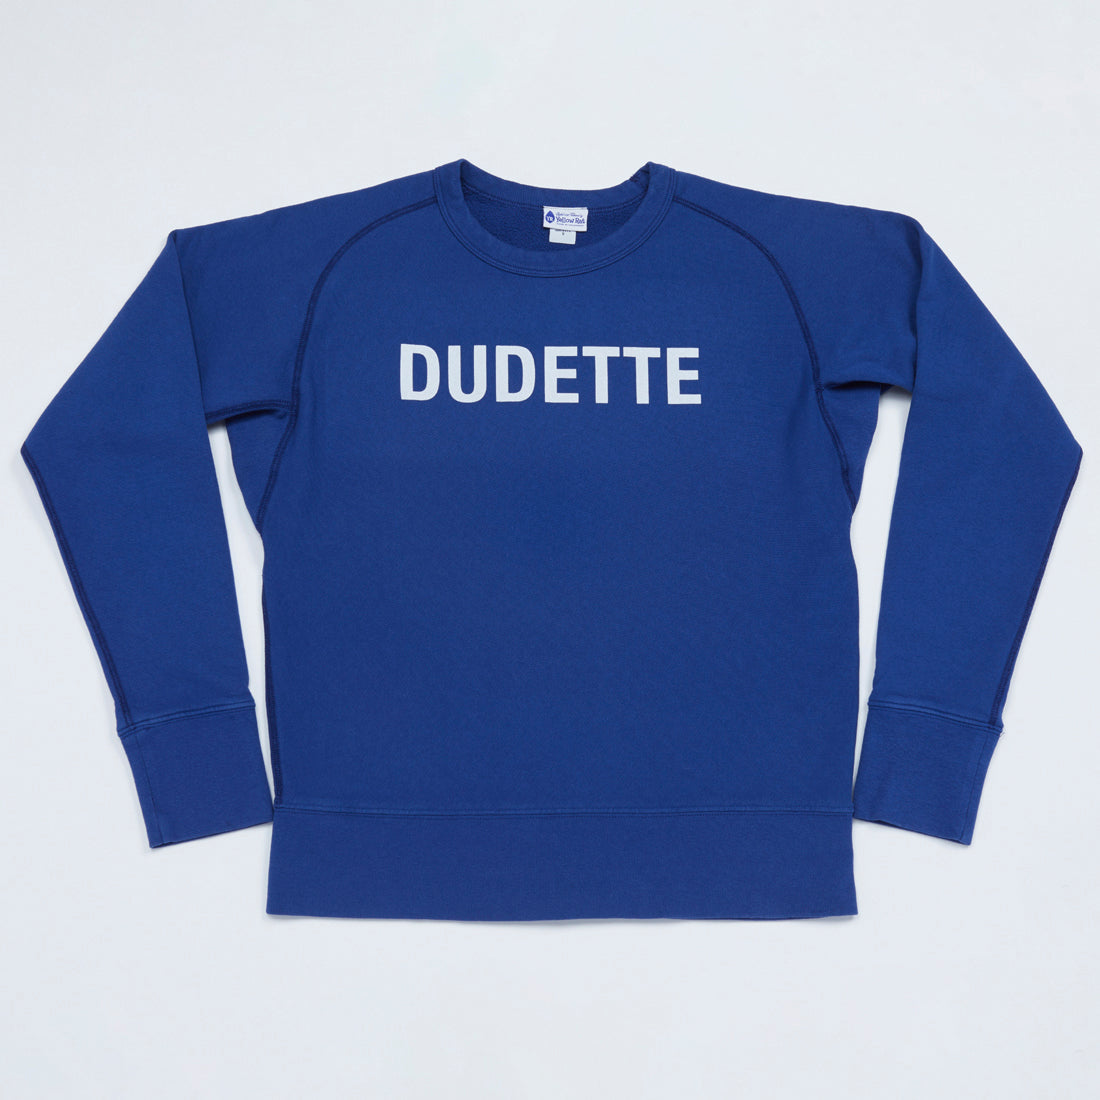 DUDETTE Sweatshirt (Blue)